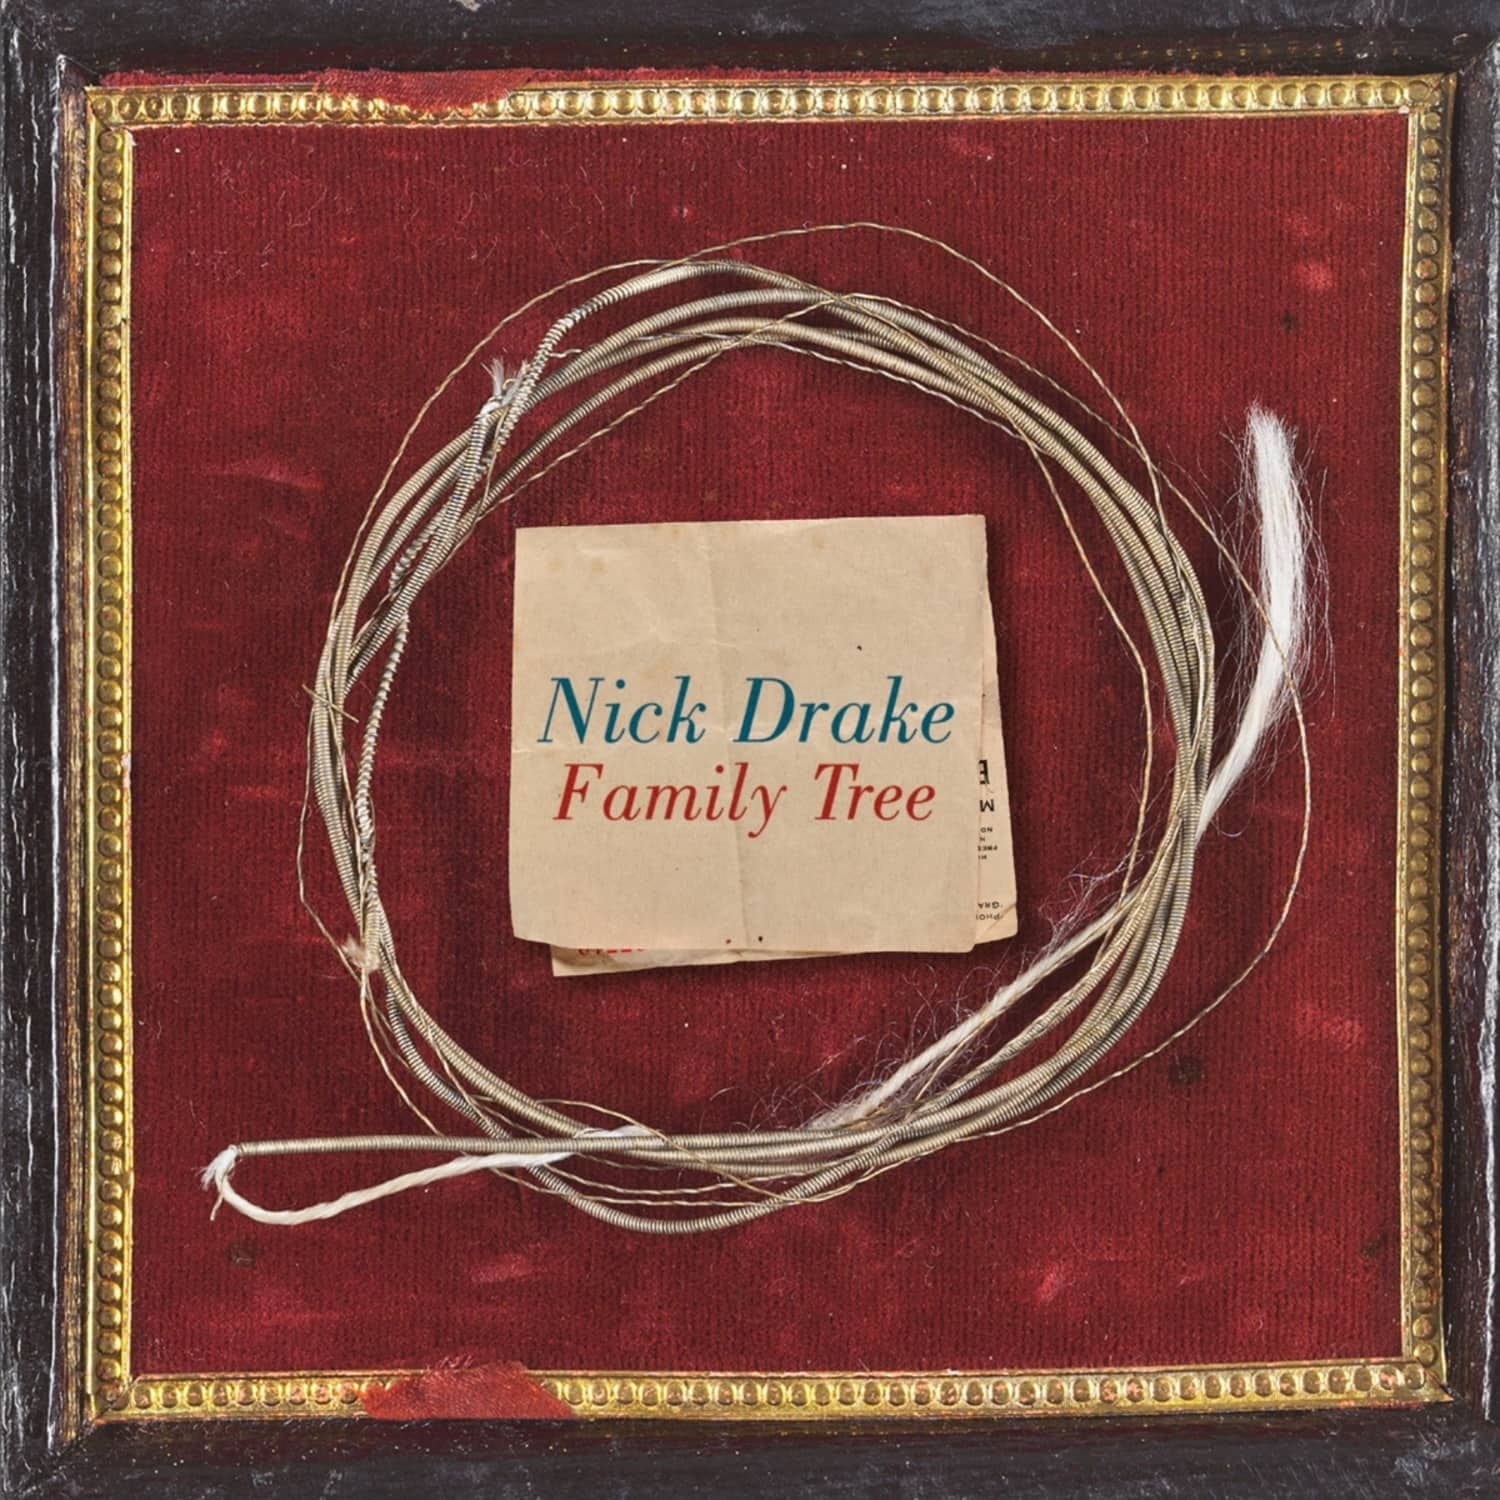 Nick Drake - FAMILY TREE 